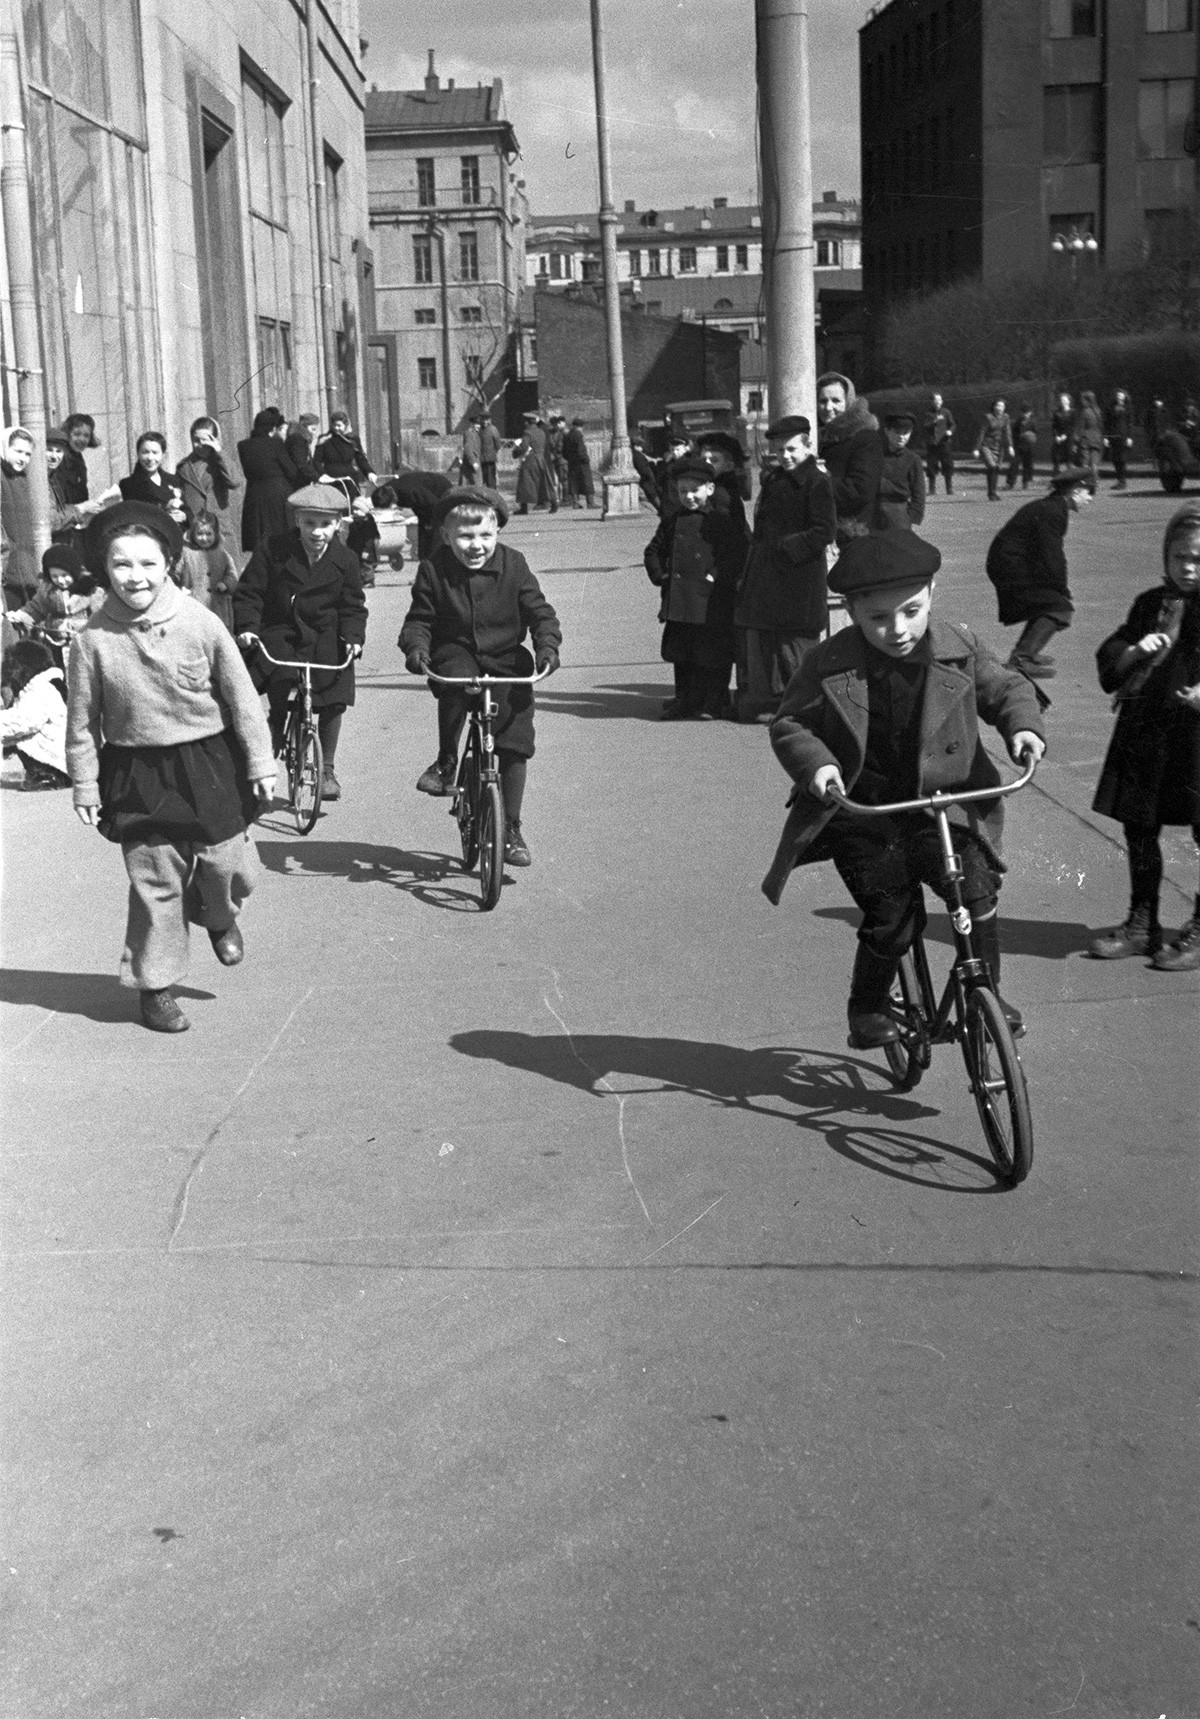 Frühling in der Stadt, 1950
